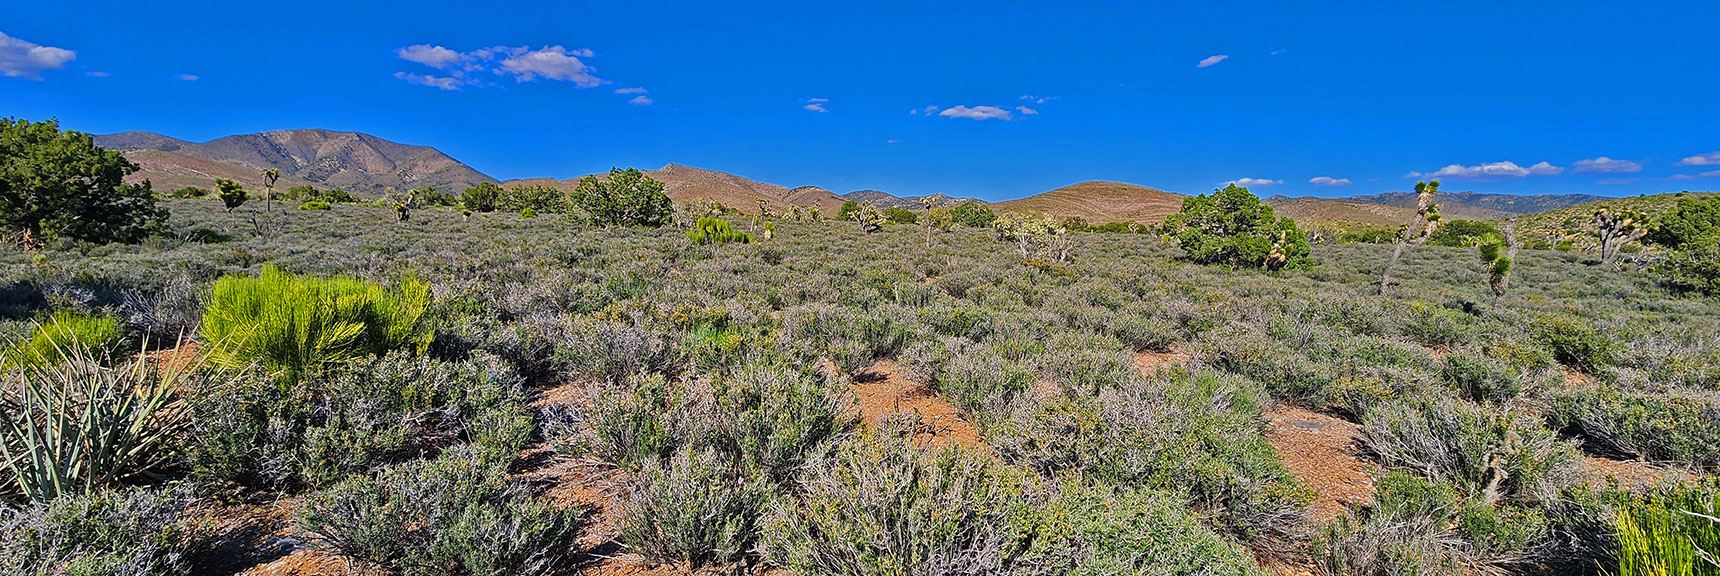 Weaving Through This Beautiful Lower Sage Field, Nearing Start/End Point | Mt Wilson to Hidden Peak | Upper Crest Ridgeline | Rainbow Mountain Wilderness, Nevada